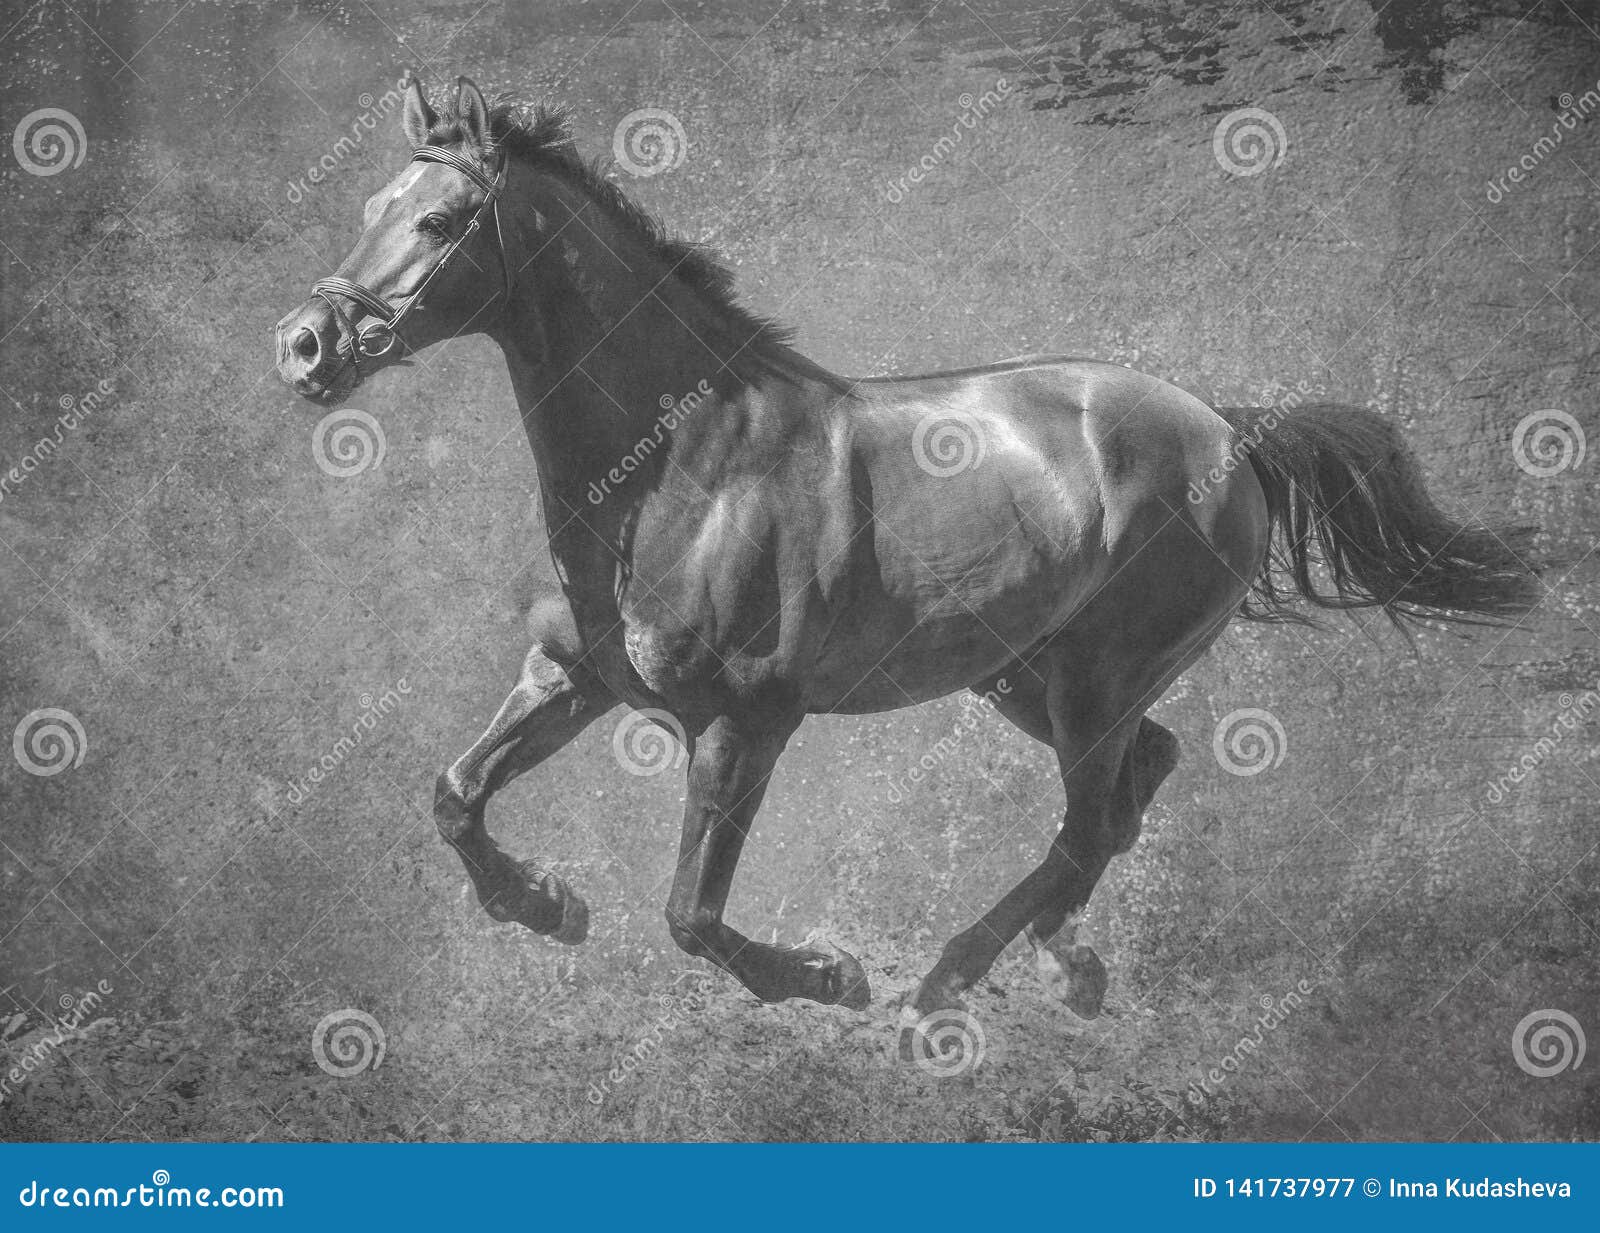 le-cheval-fonc%C3%A9-de-sport-court-galop-sur-la-libert%C3%A9-dans-traitement-artistique-noir-et-blanc-141737977.jpg